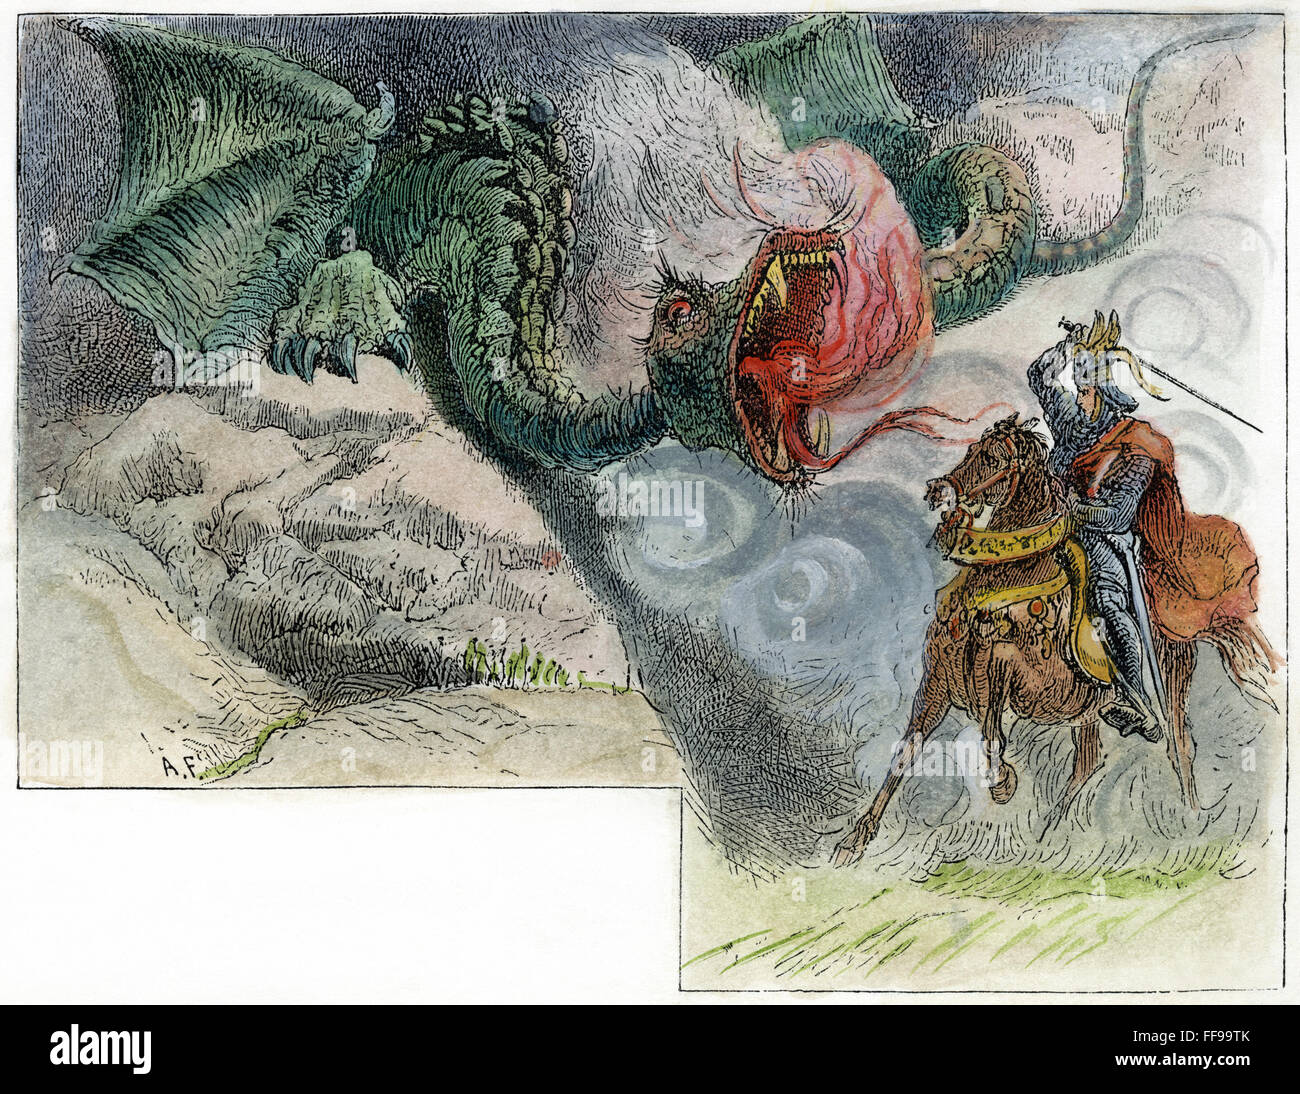 Chevalier et dragon. /NA chevalier errant de combattre un dragon. La gravure sur bois, 19e siècle. Banque D'Images